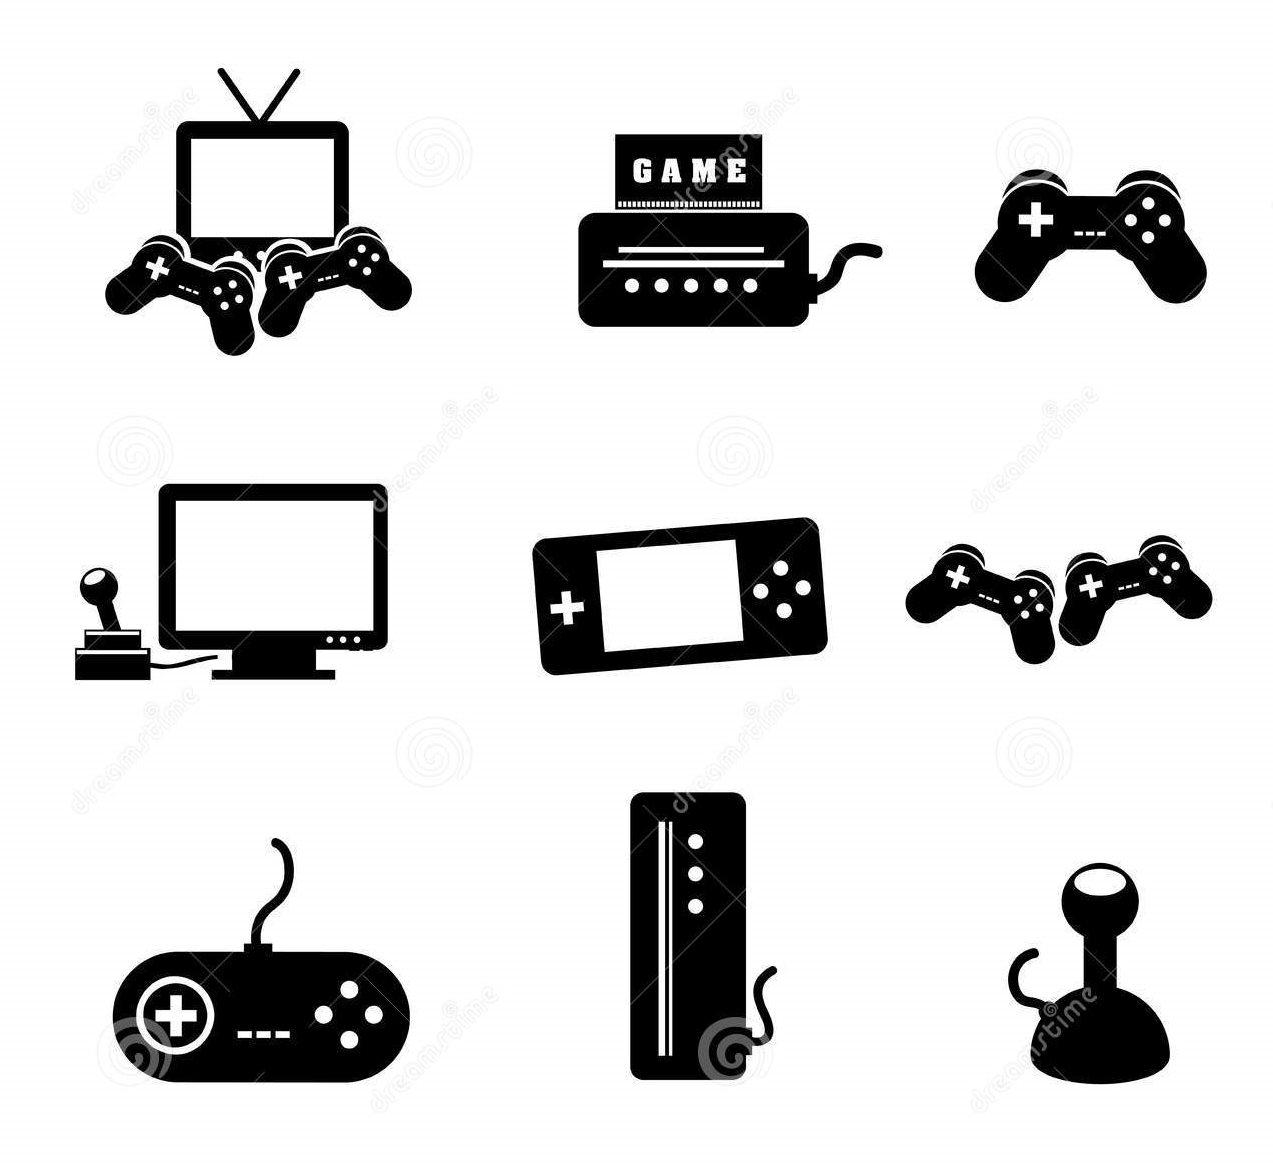 WII U destravado com vários emuladores e jogos - Videogames - Ponta Grossa,  Maceió 1254391931